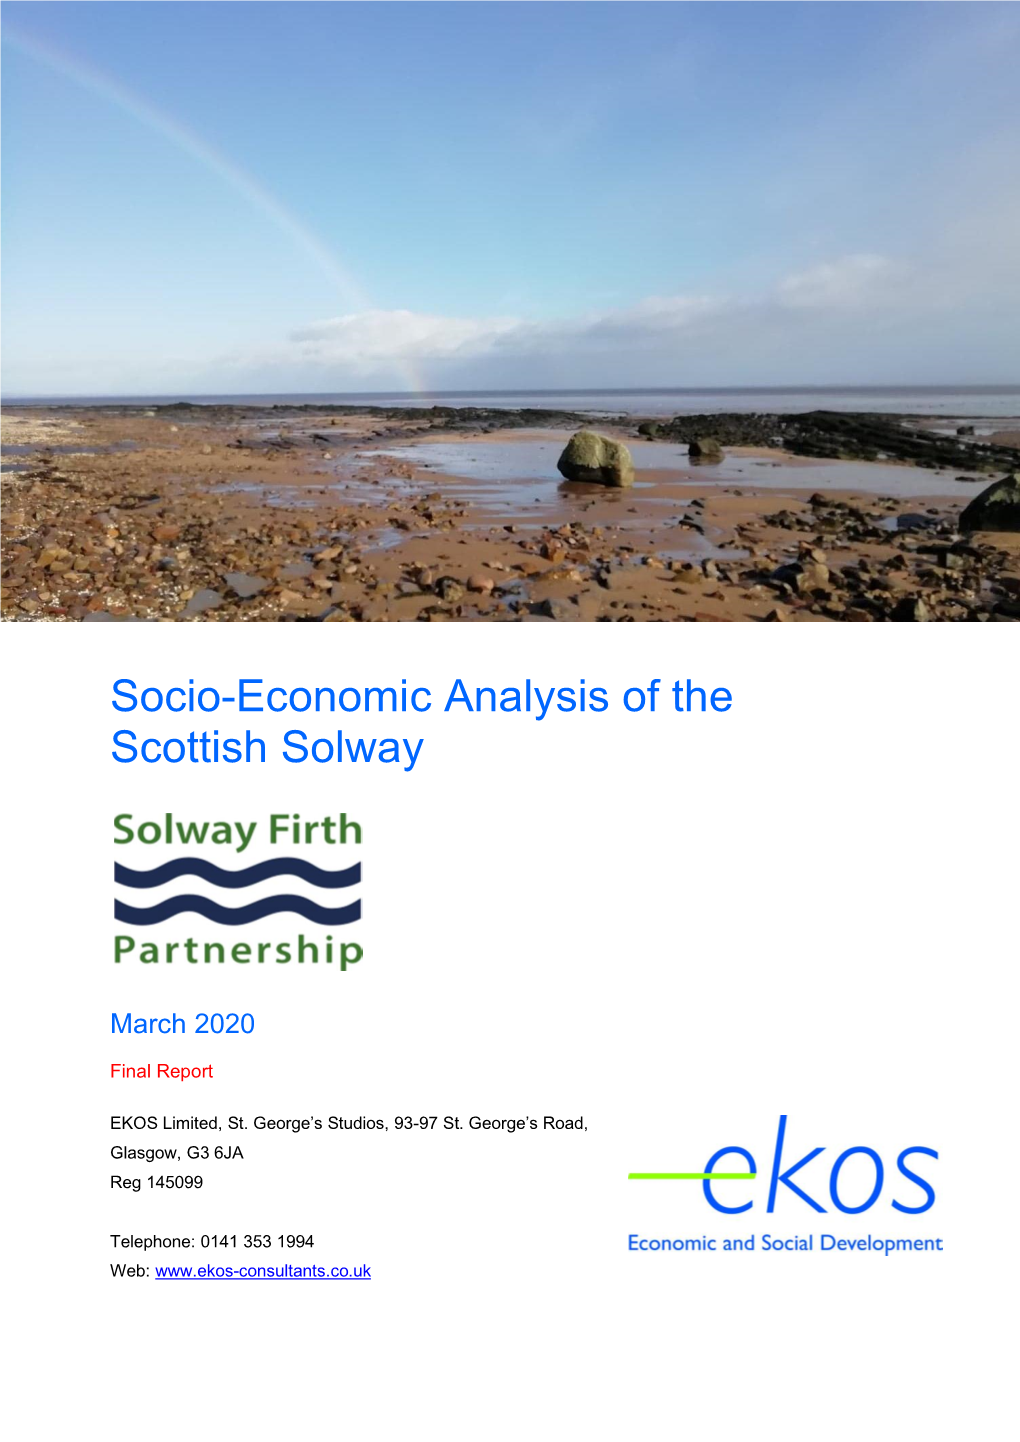 Socio-Economic Analysis of the Scottish Solway